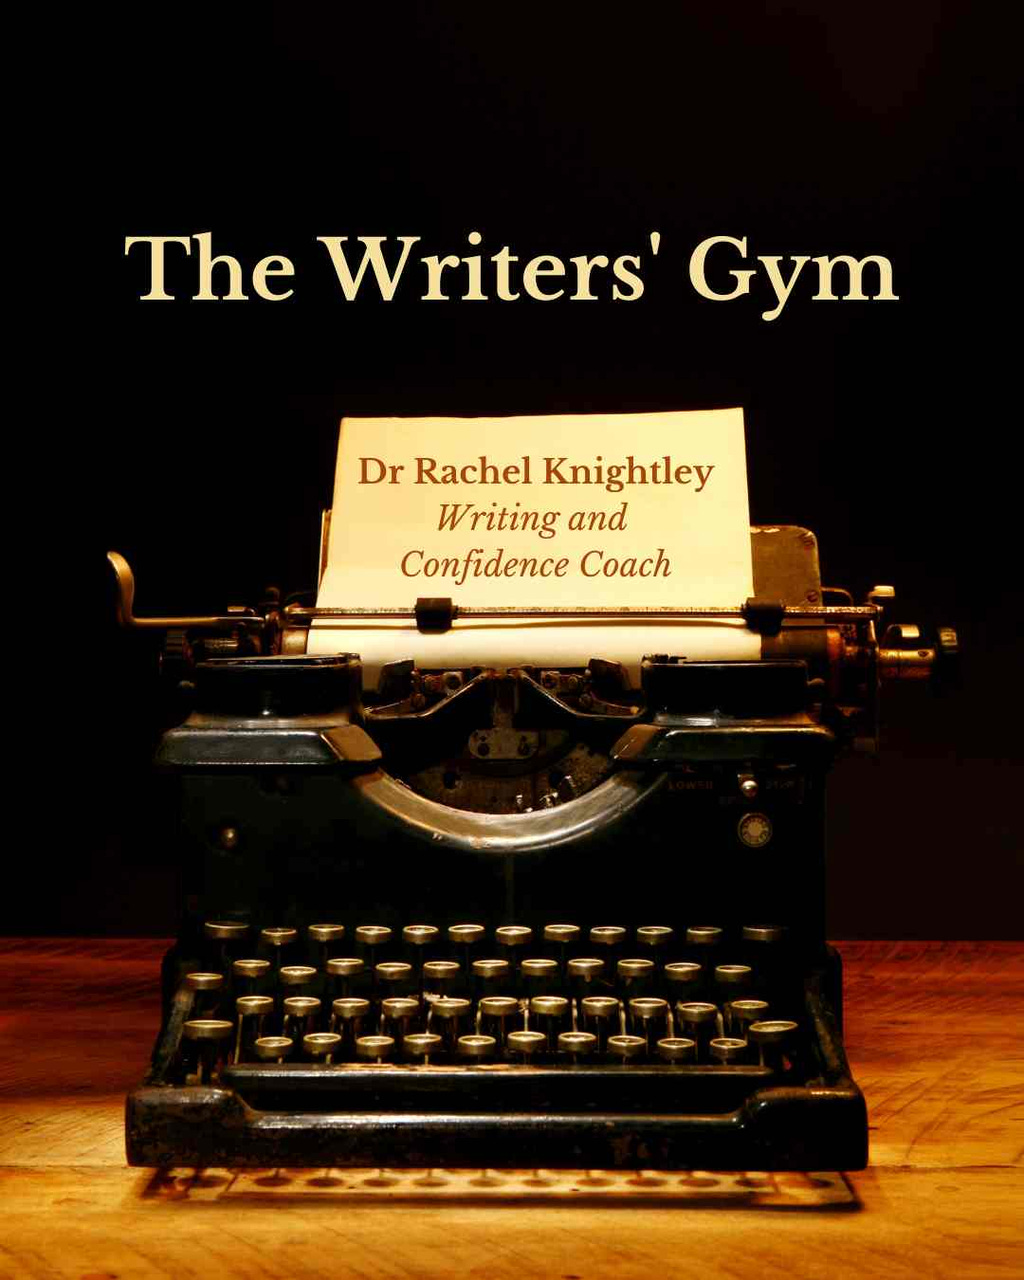 Dr Rachel Knightley